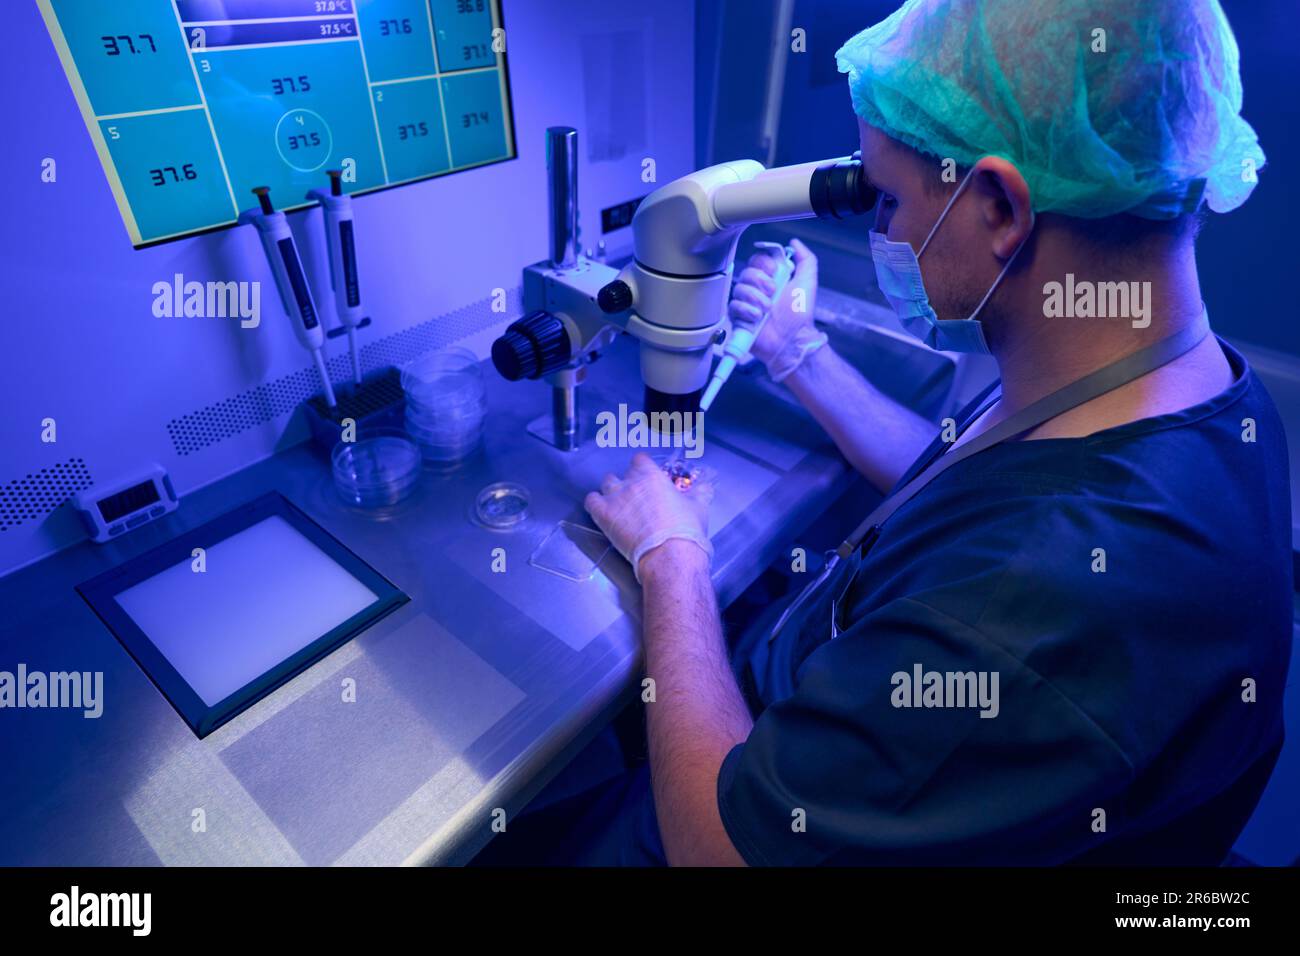 Laboratorio in guanti sterili e maschera protettiva per il viso guardando al microscopio Foto Stock